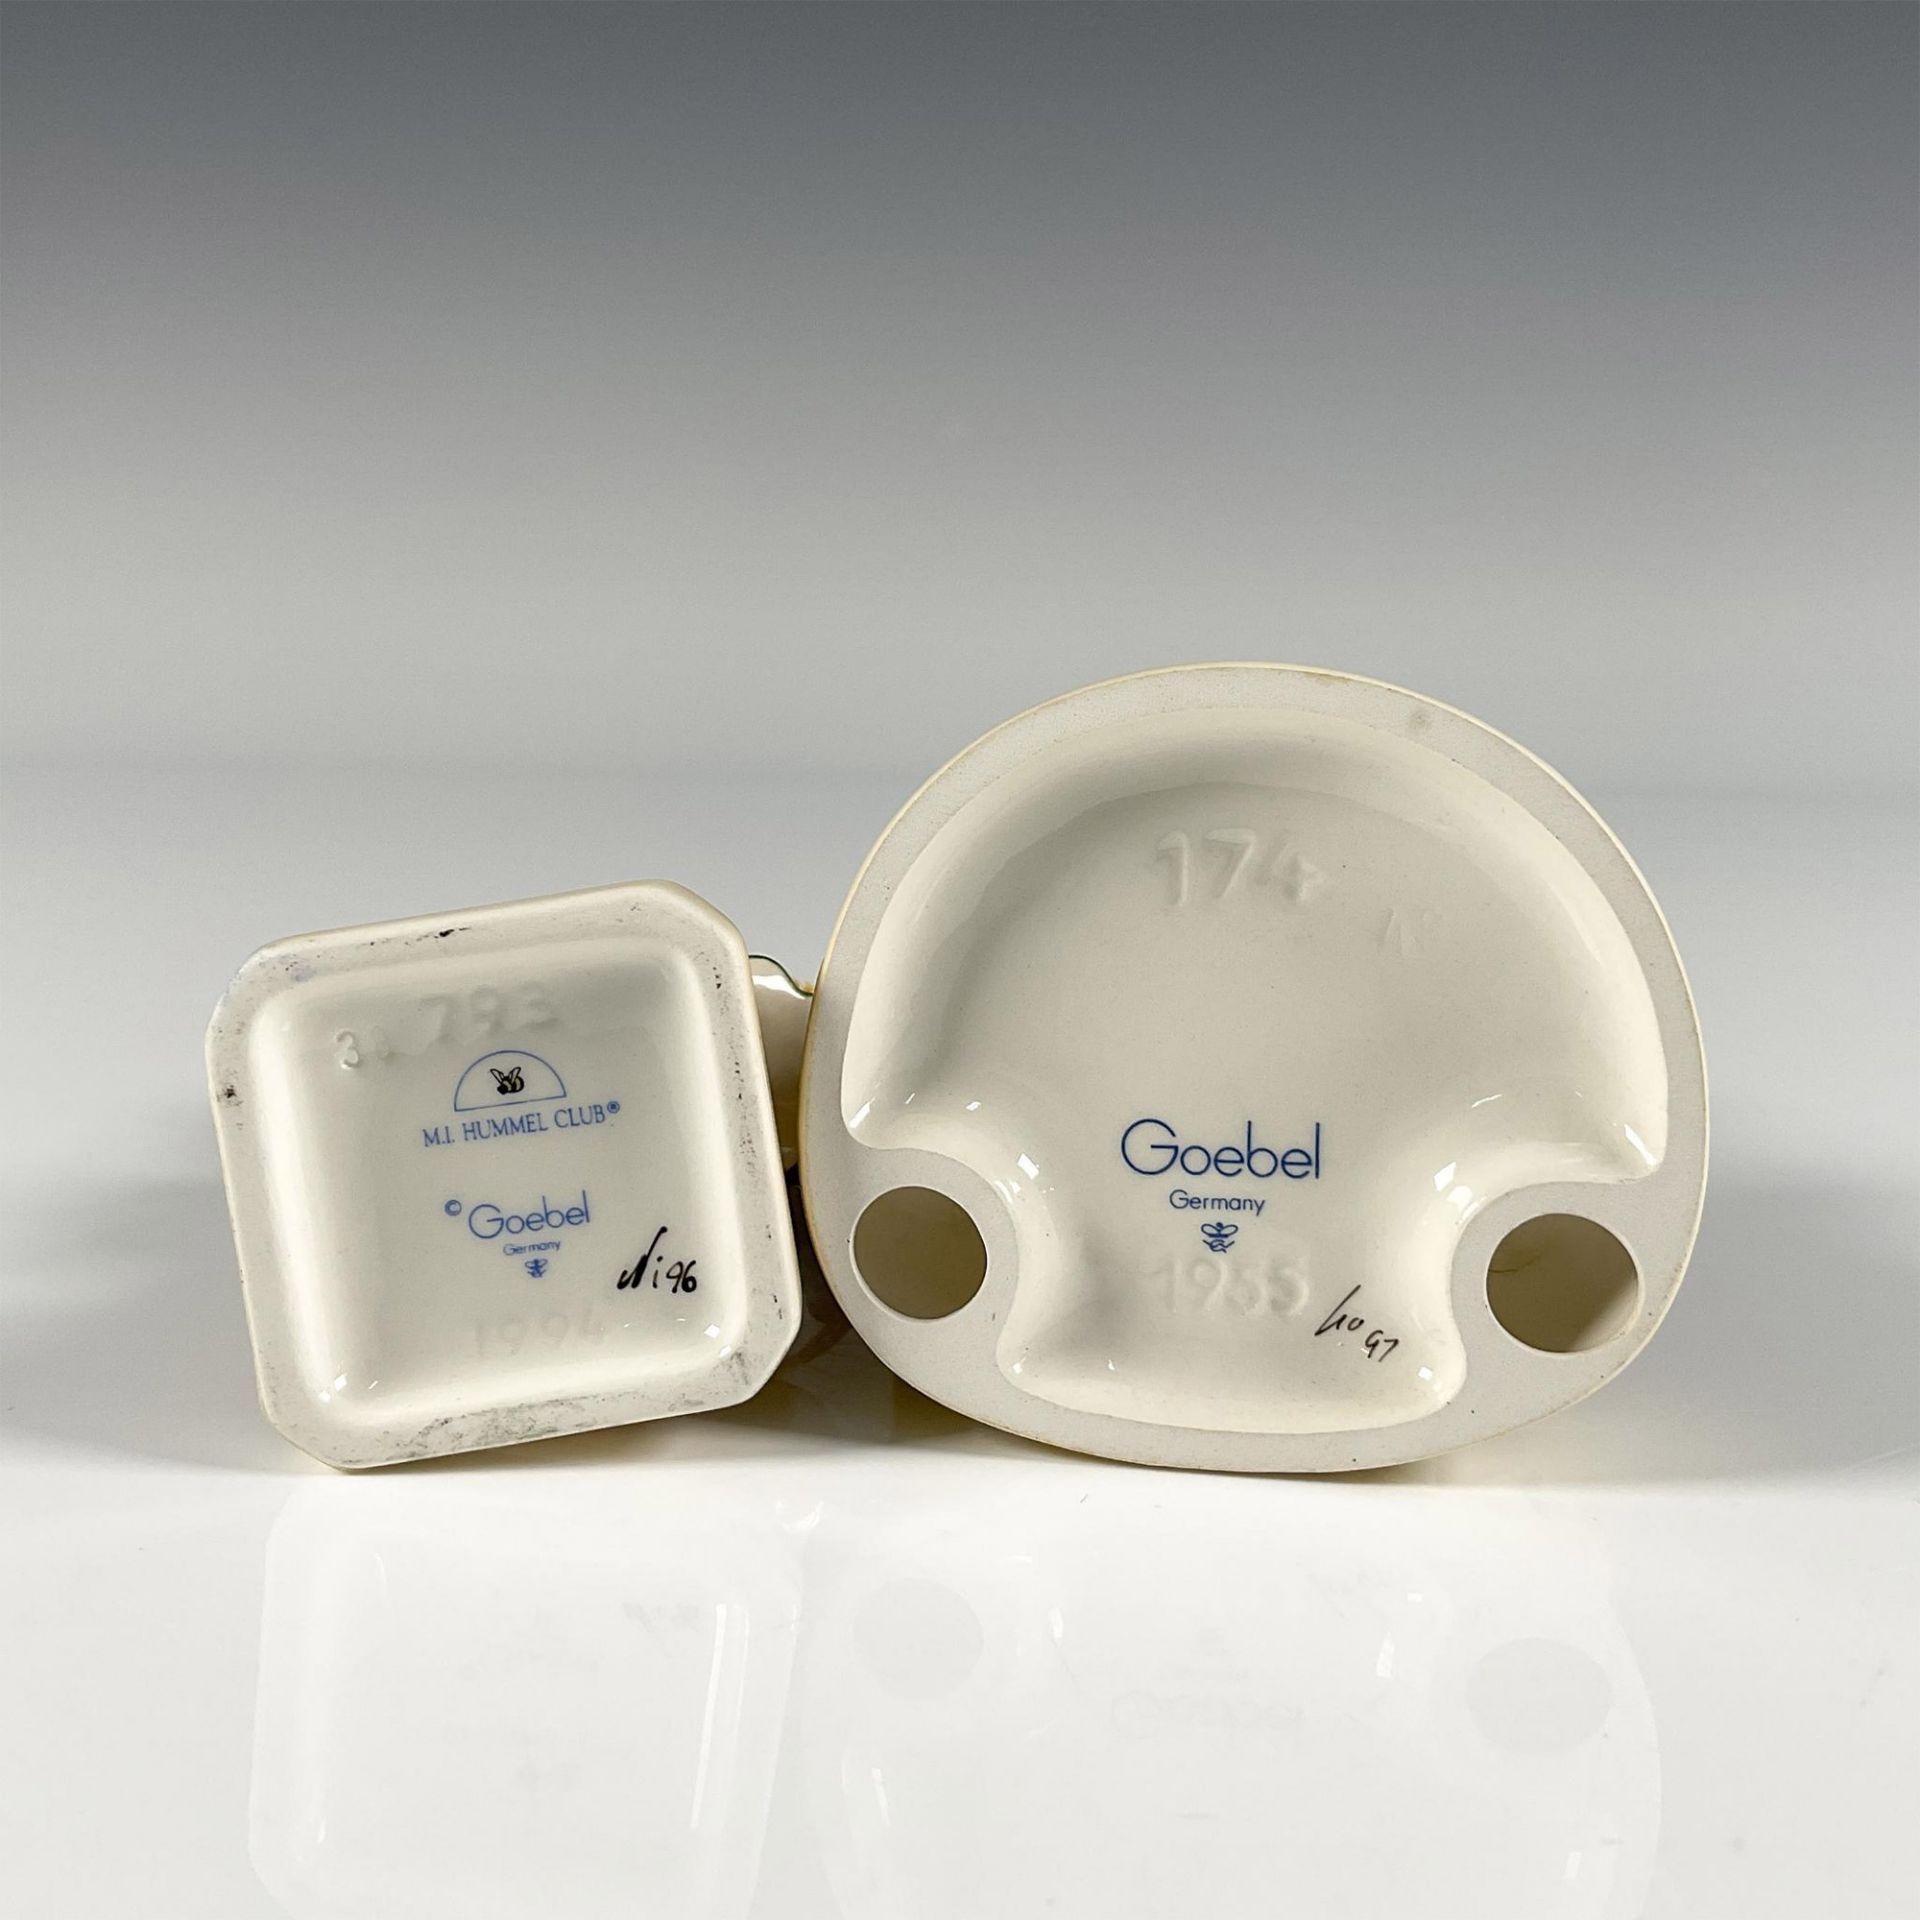 2pc Goebel Hummel Porcelain Figurines - Image 3 of 3